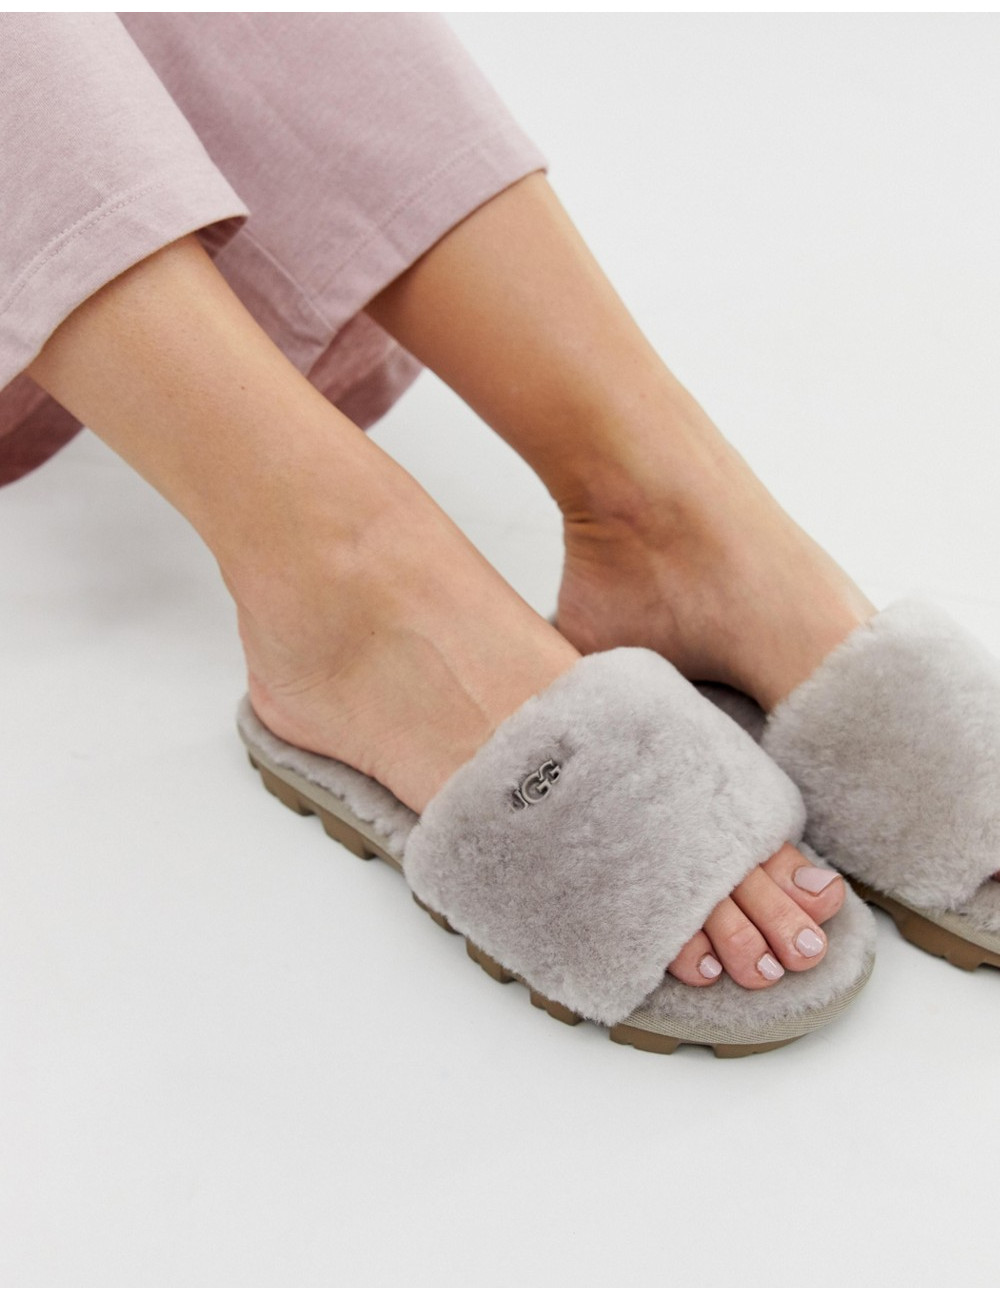 UGG Cozette slide slippers...